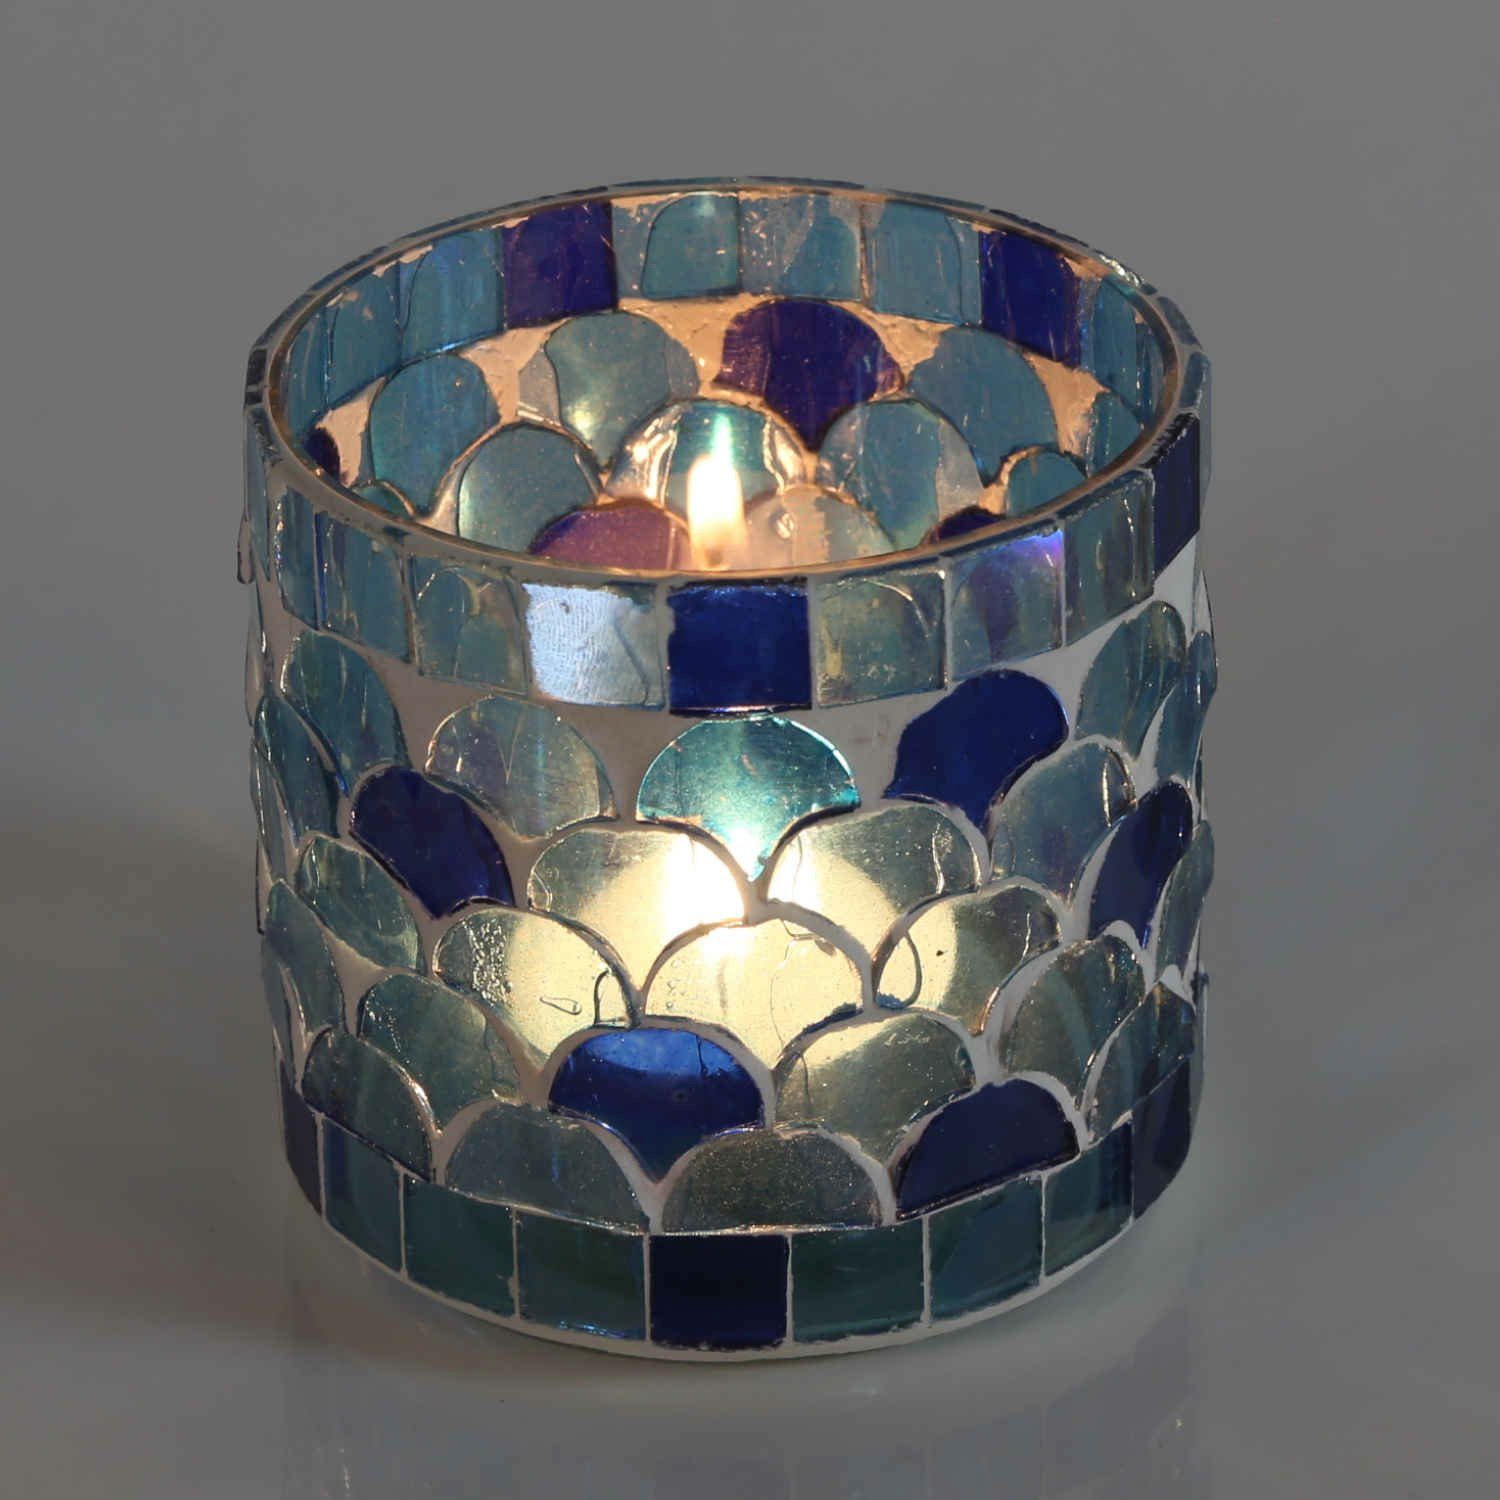 Casa Moro Windlicht Orientalisches Mosaik Glas Windlicht Athen Dunkelblau handgefertigt (Boho Chic Teelichthalter Kerzenständer Kerzenhalter, Glaswindlicht in den Größen S und M oder als 2er Set bestellbar), Kunsthandwerk pur für einfach schöner wohnen